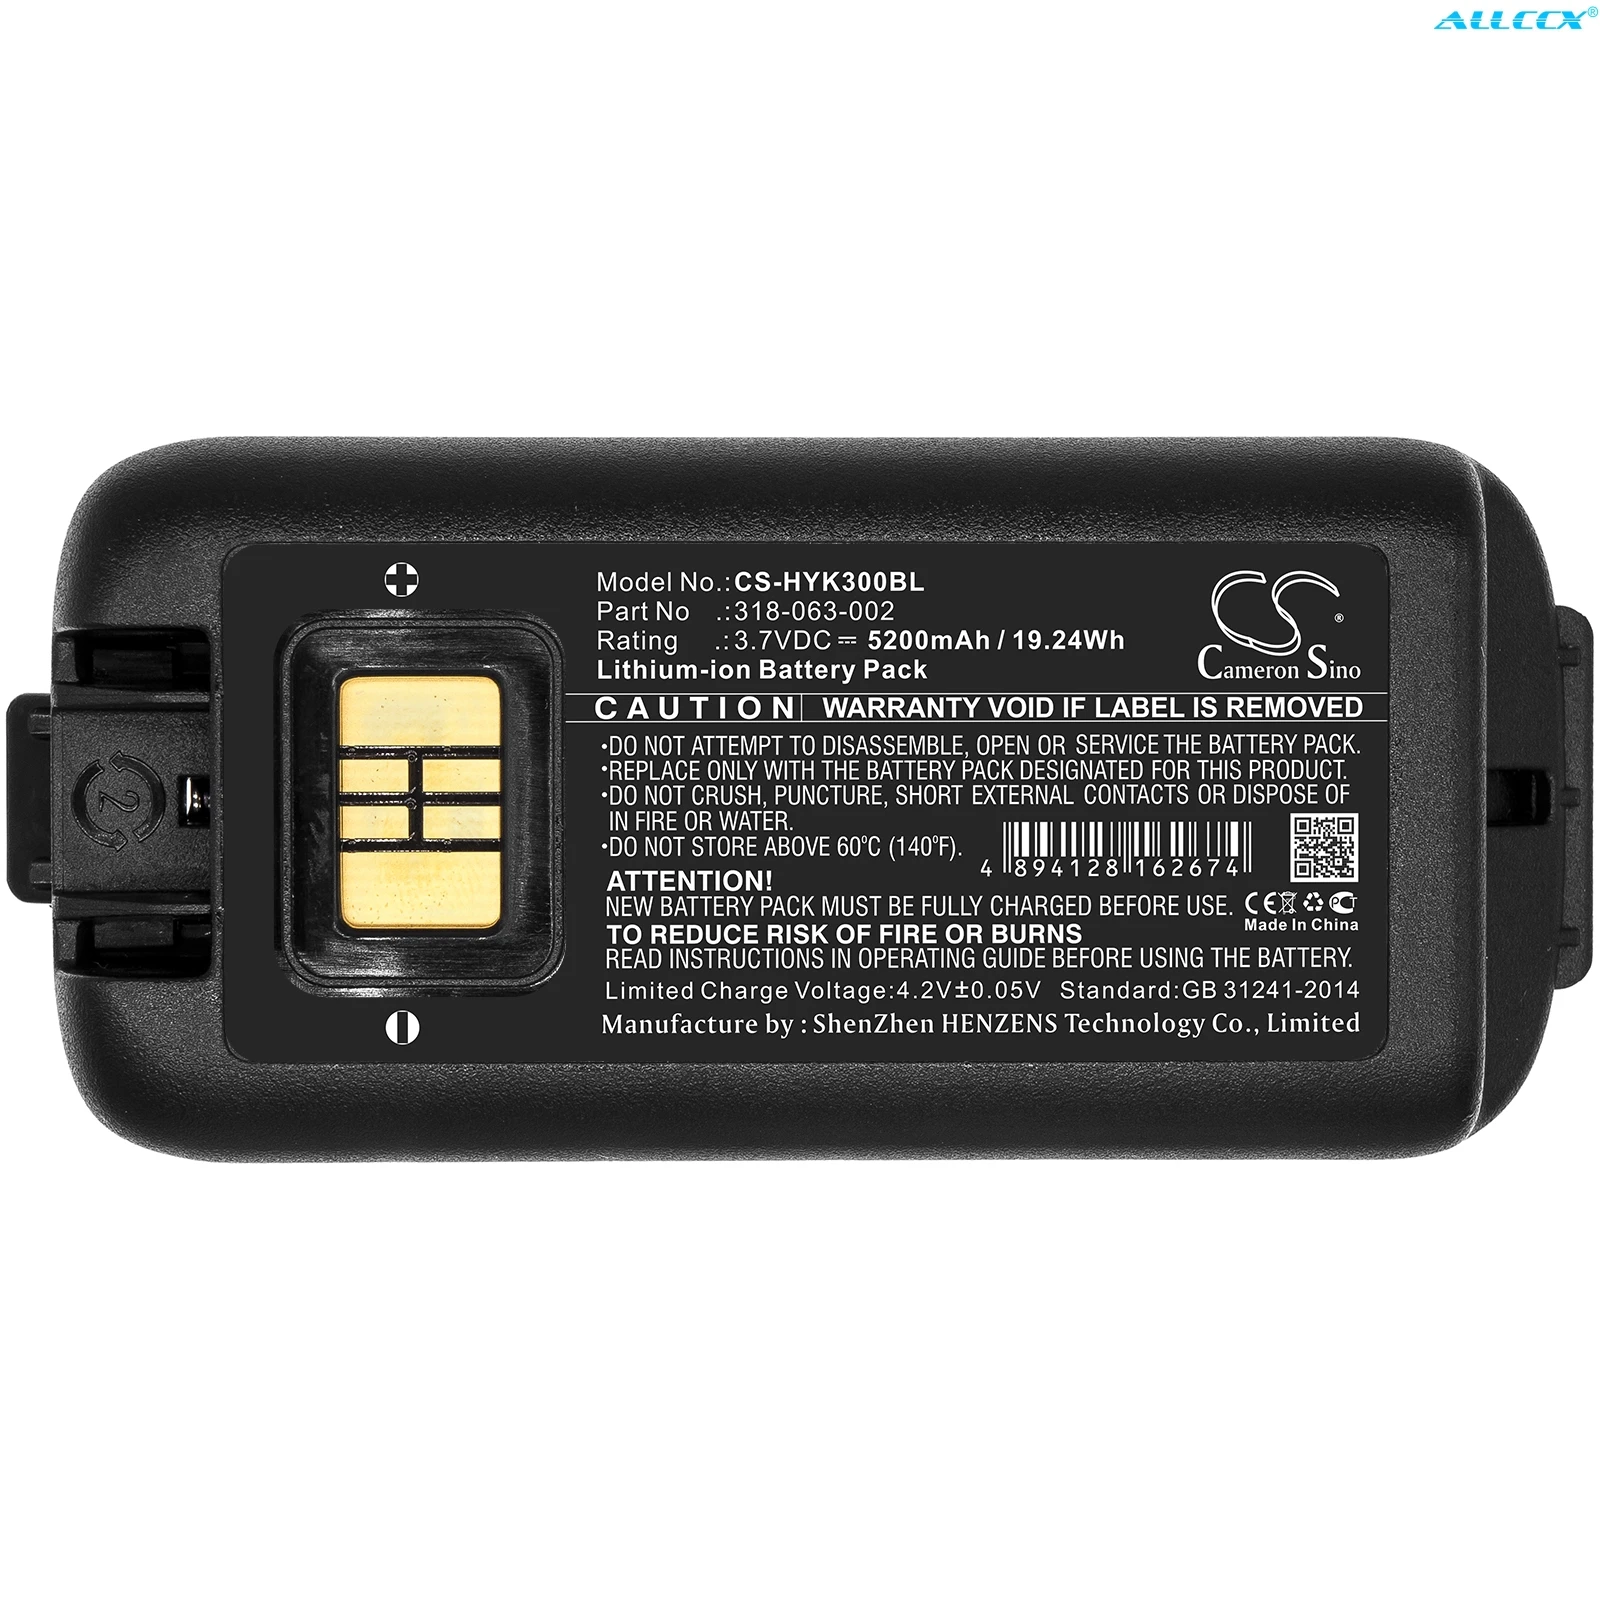 

Cameron Sino 5200mAh Barcode Scanner Battery for Honeywell CK3,CK3X,CK3XR,CK65, CK75, CK71, CK3B, For Dolphin CK65